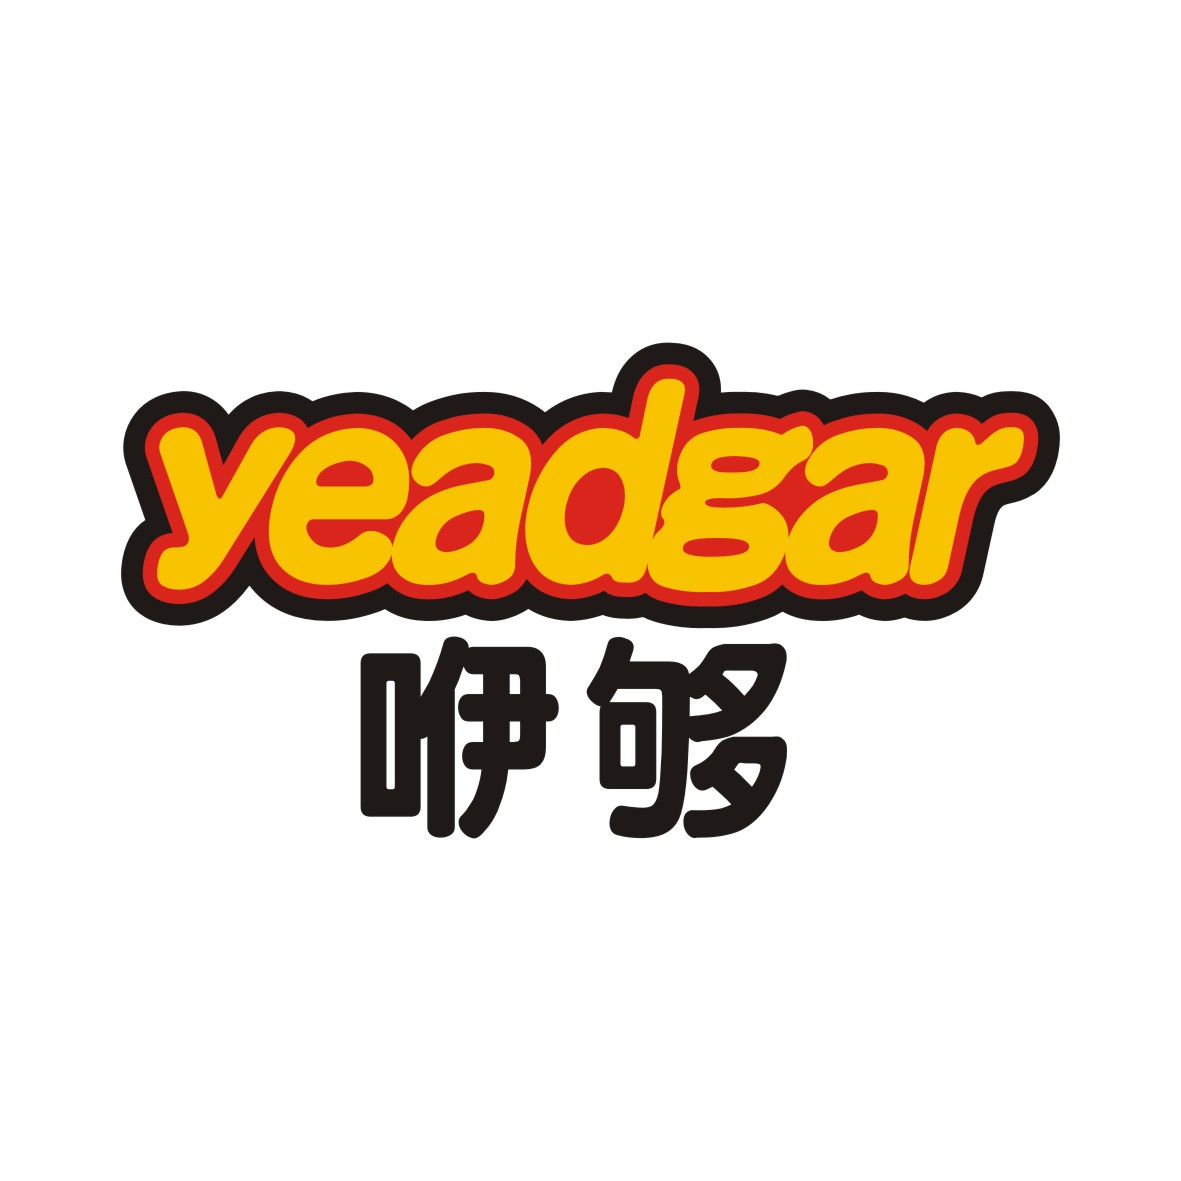 广州品翰文化发展有限公司商标咿够 YEADGAR（32类）商标转让多少钱？